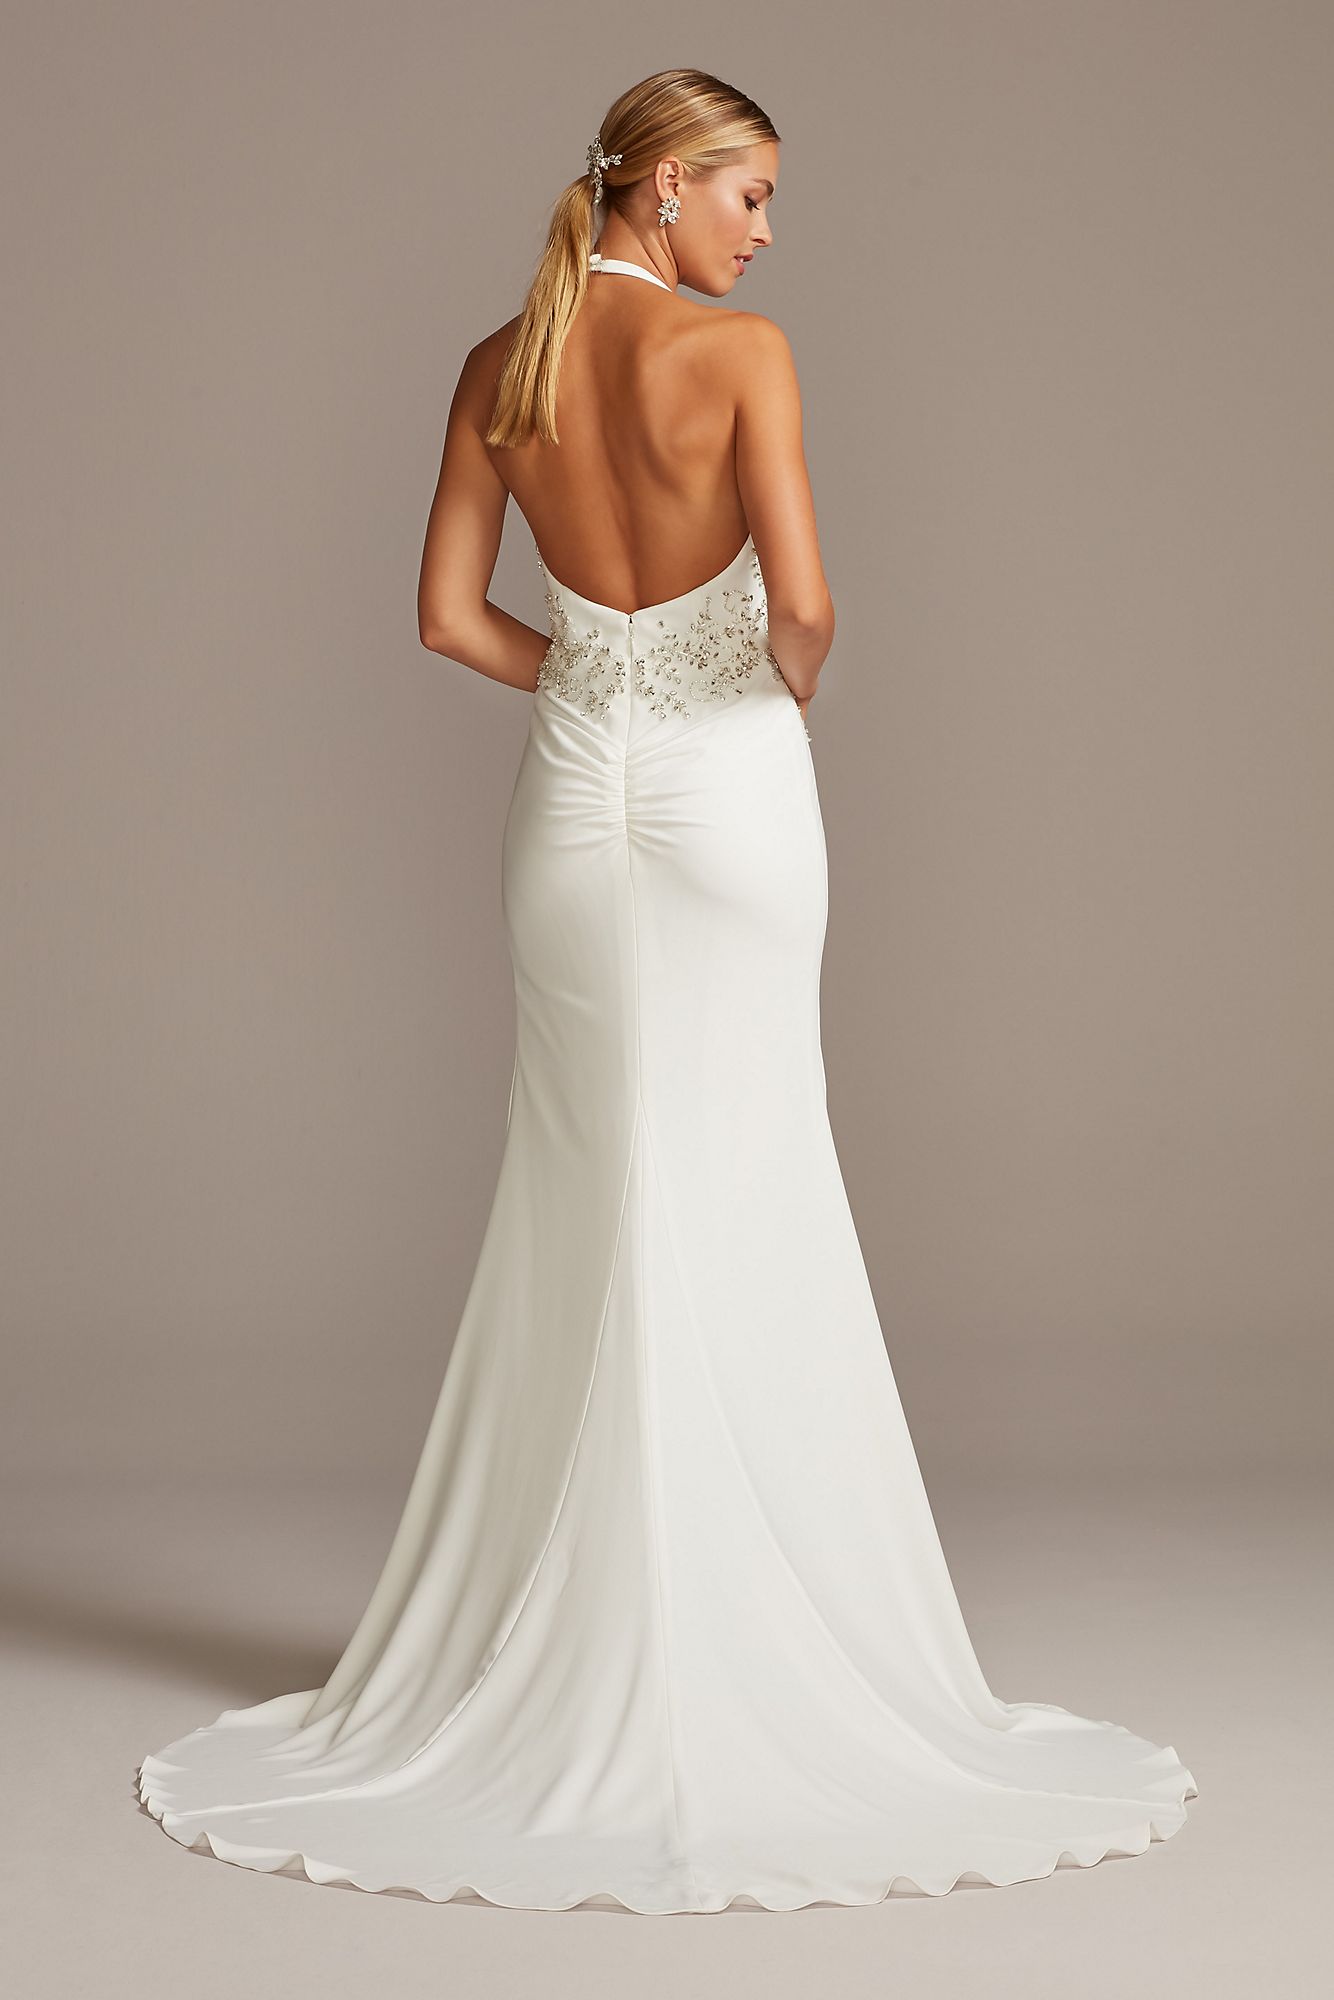  SWG838 Plunge Halter Wedding Dress with  Embellished Waist